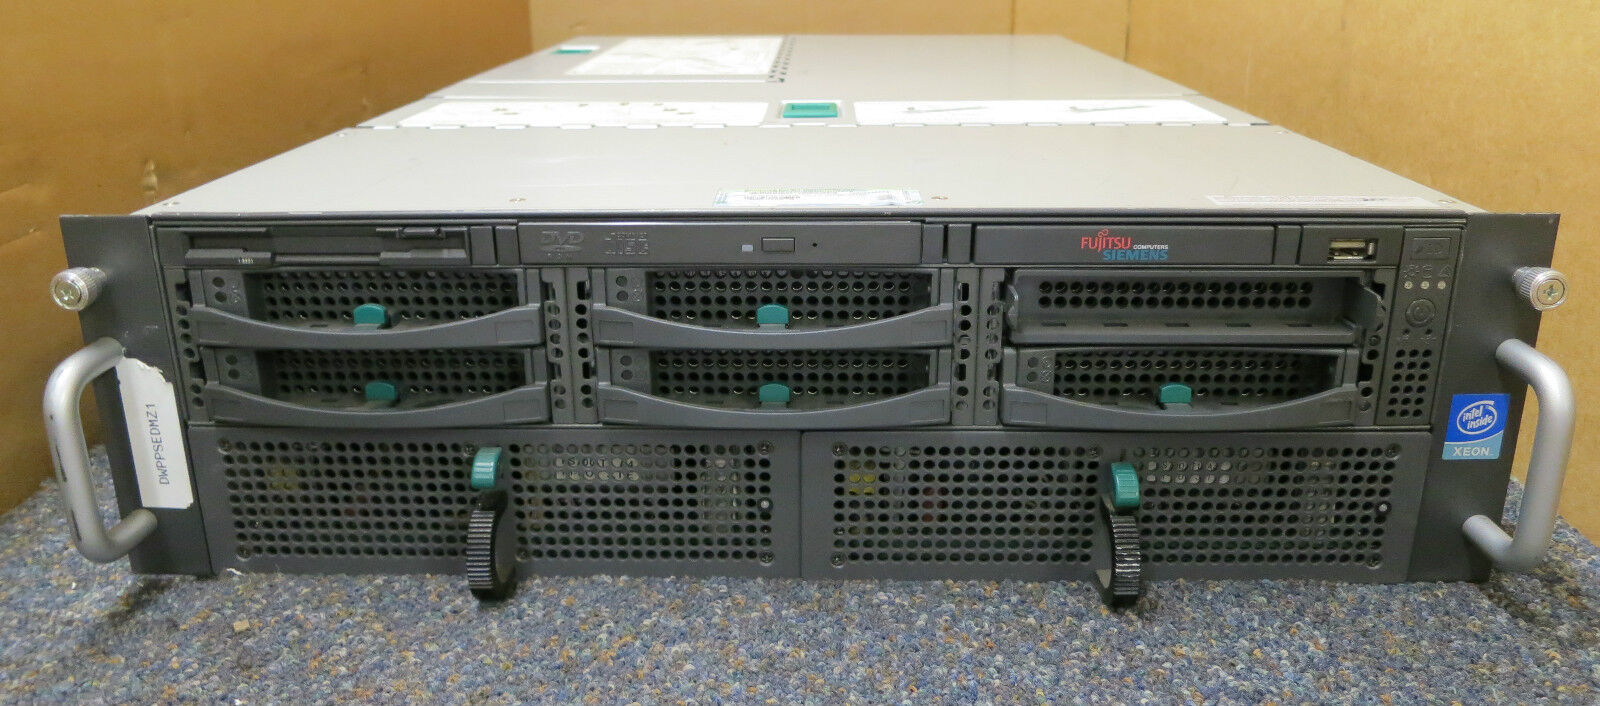 Fujitsu Primergy RX600 S1 - 4 x Xeon 2.7GHz, 4GB, 291GB - 3U Rack Mount Server